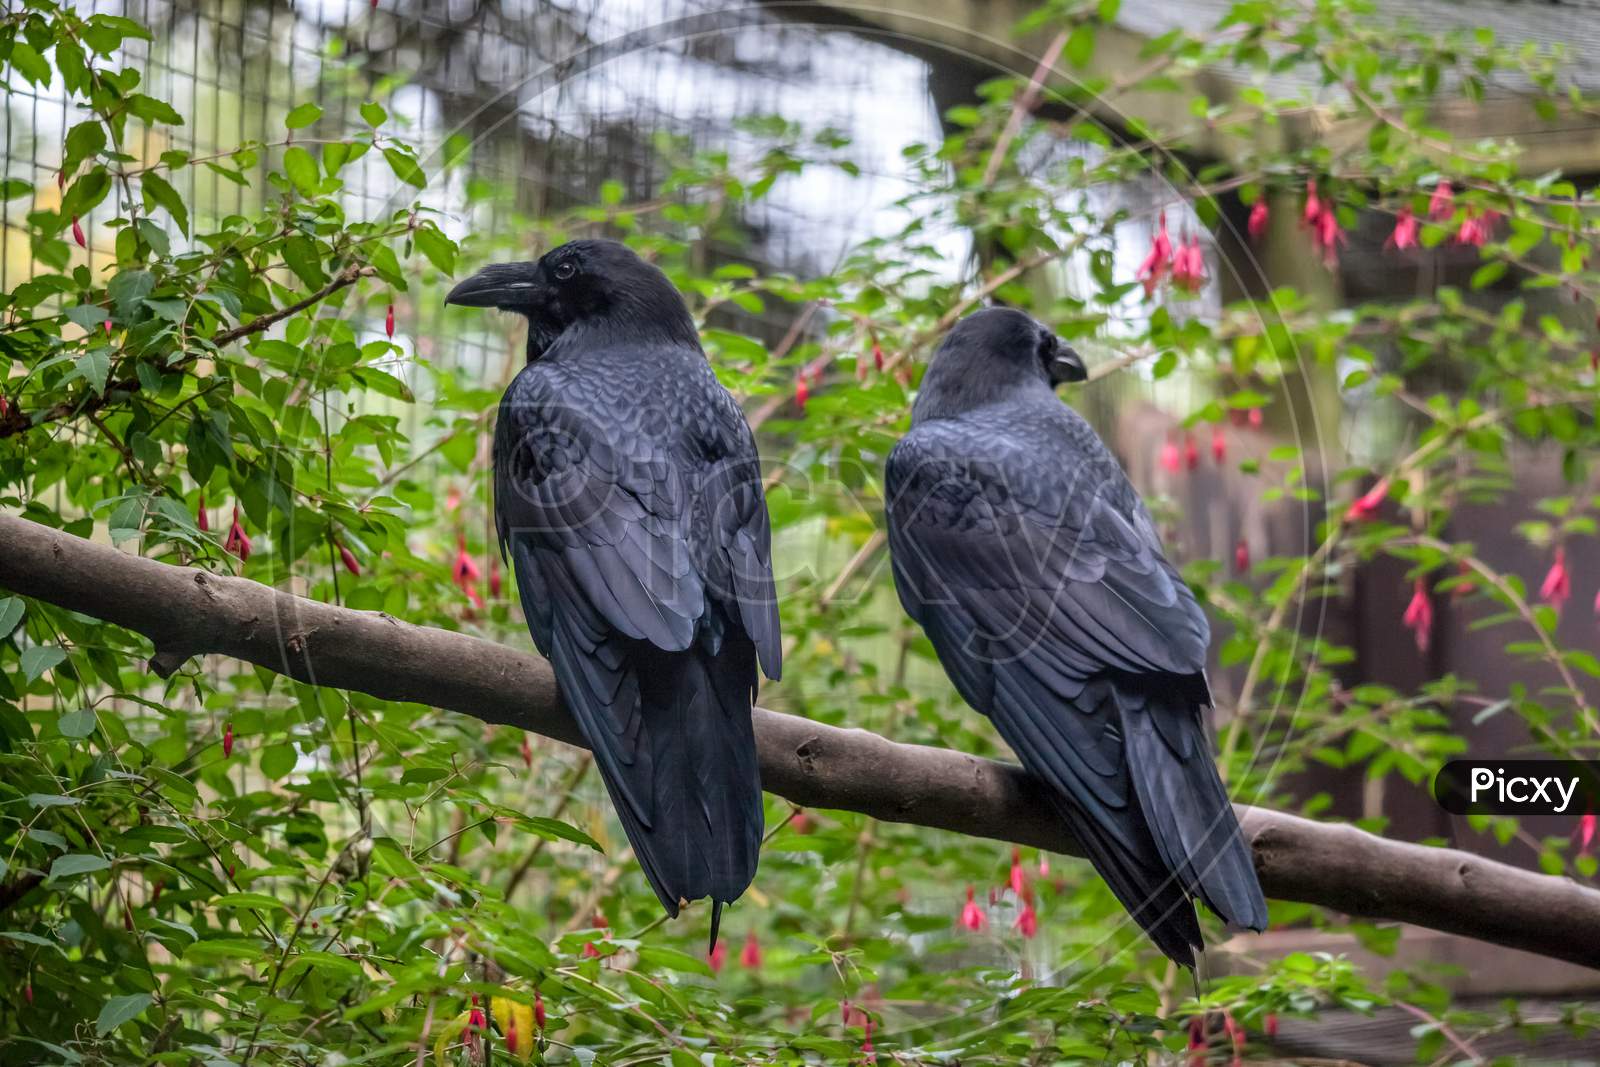 Common Raven (Corvus Corax)